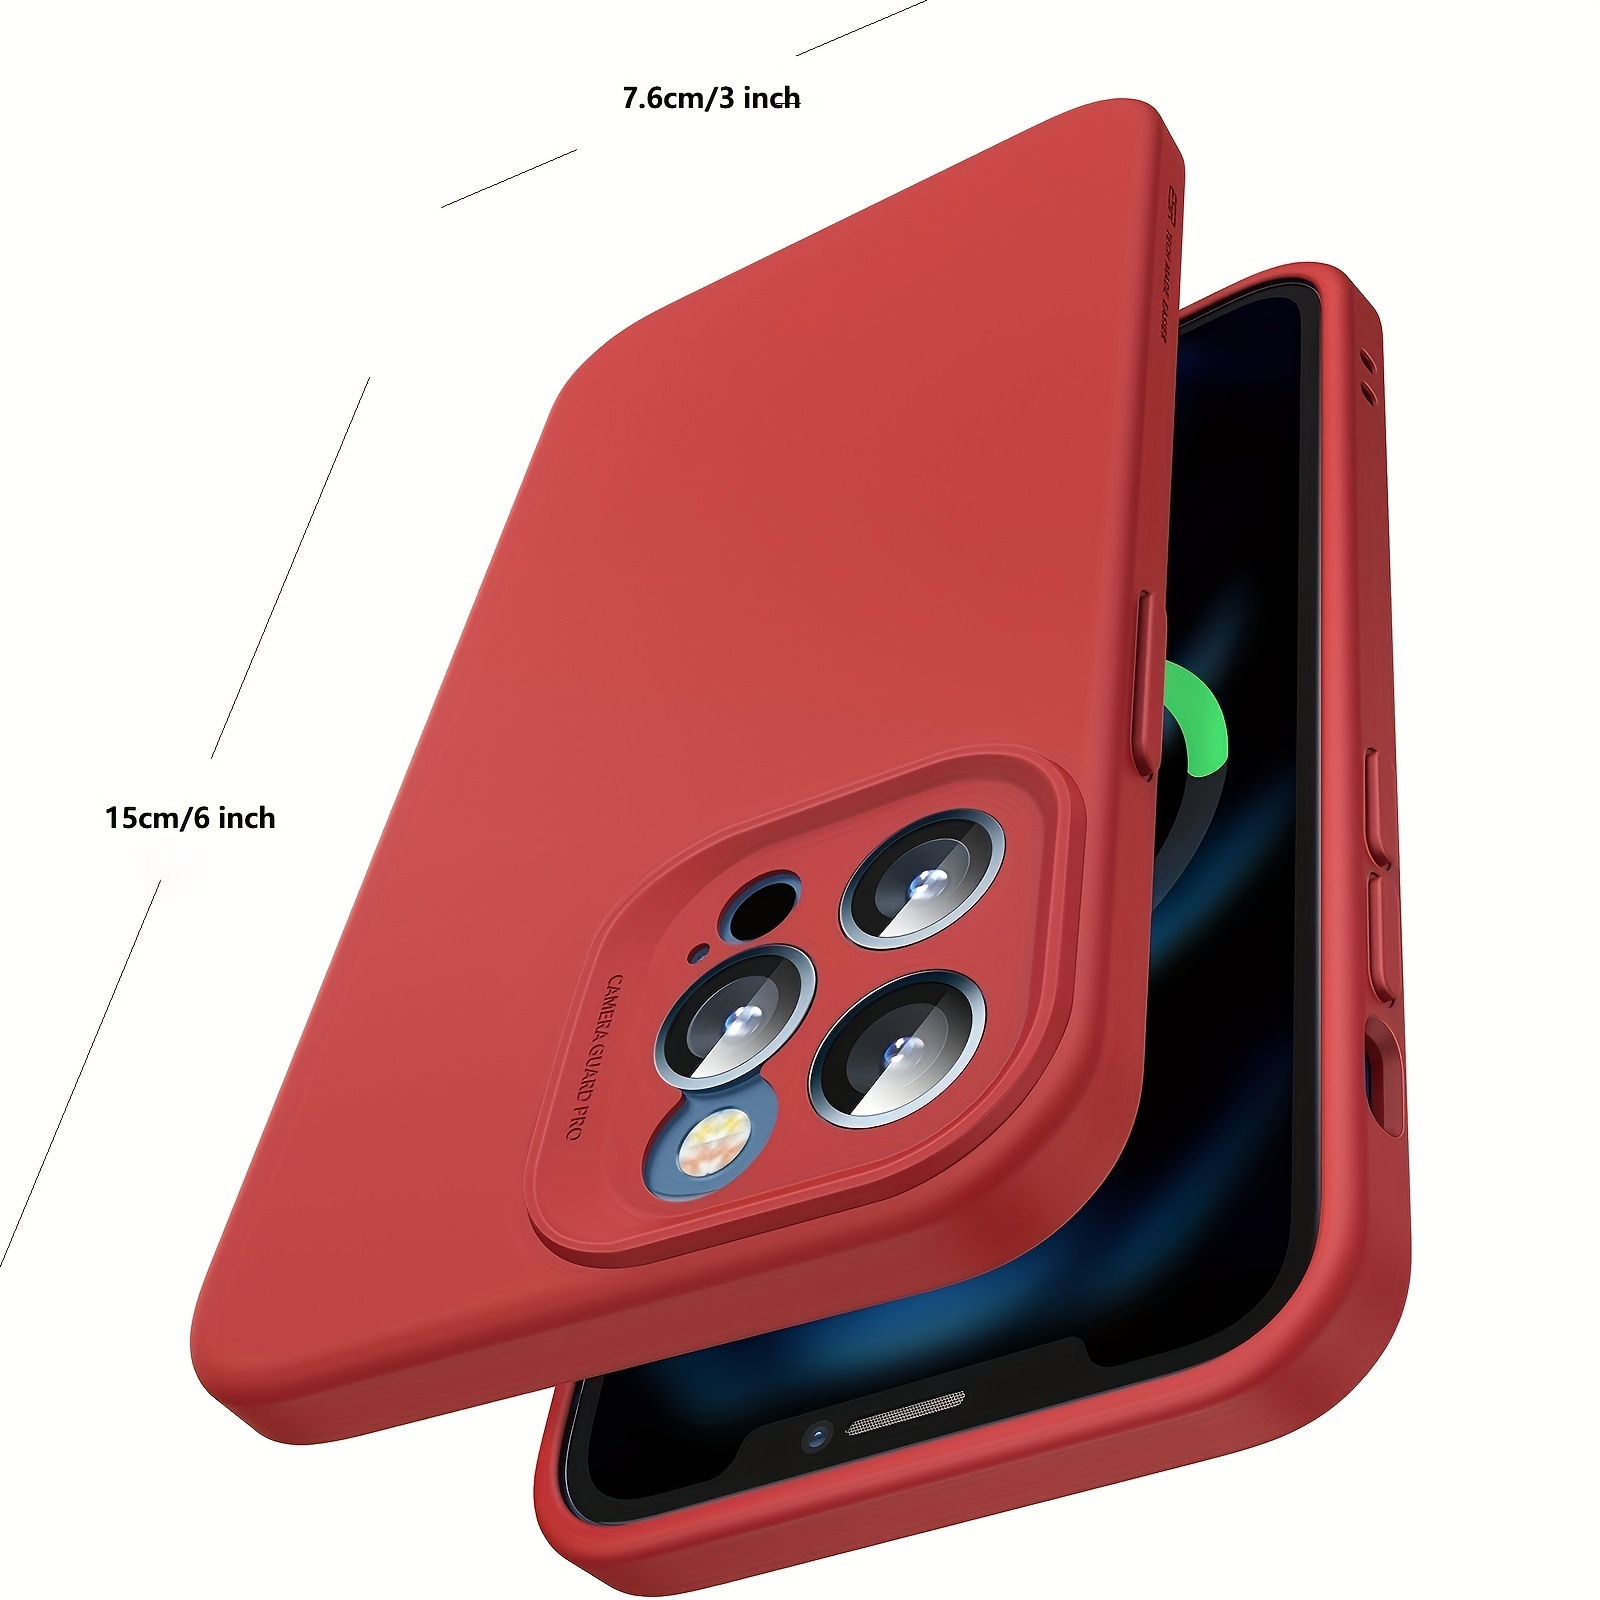 Funda Silicone Case compatible MagSafe para el iPhone 12 mini